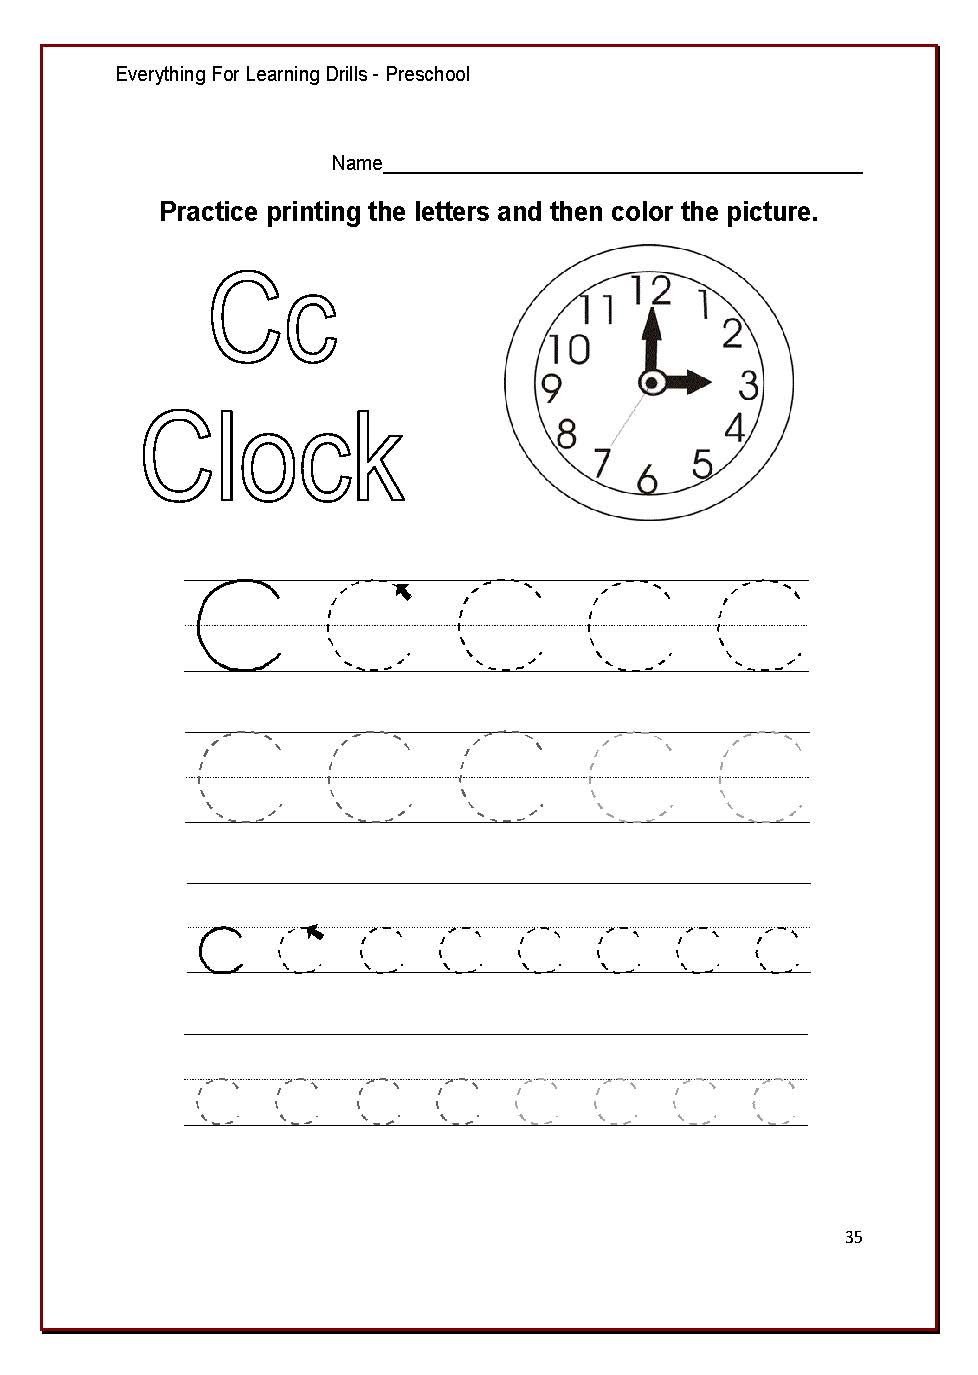 The BIG Book Of Printable Preschool Worksheets